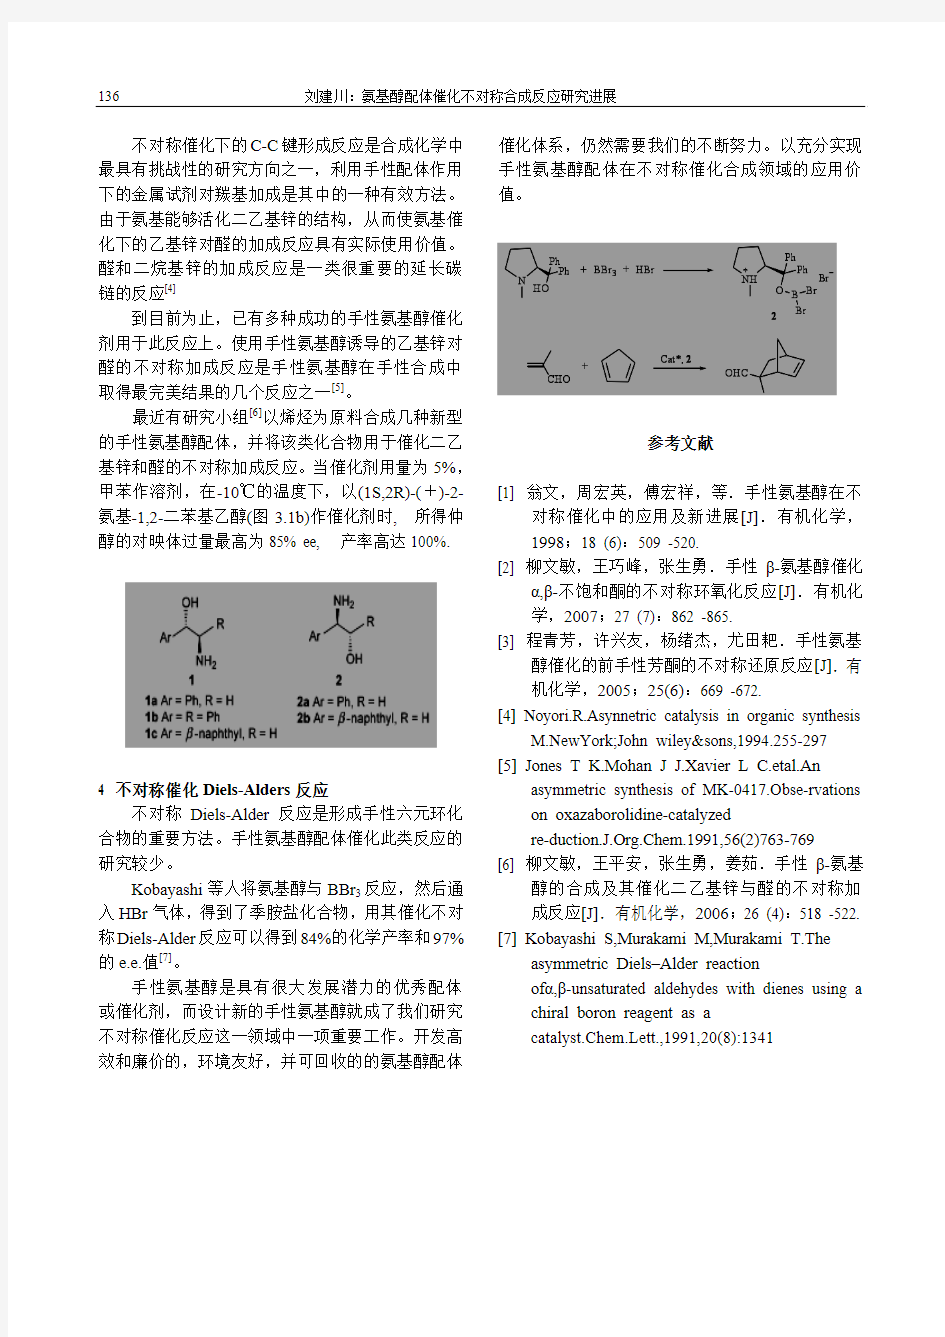 氨基醇配体催化不对称合成反应研究进展